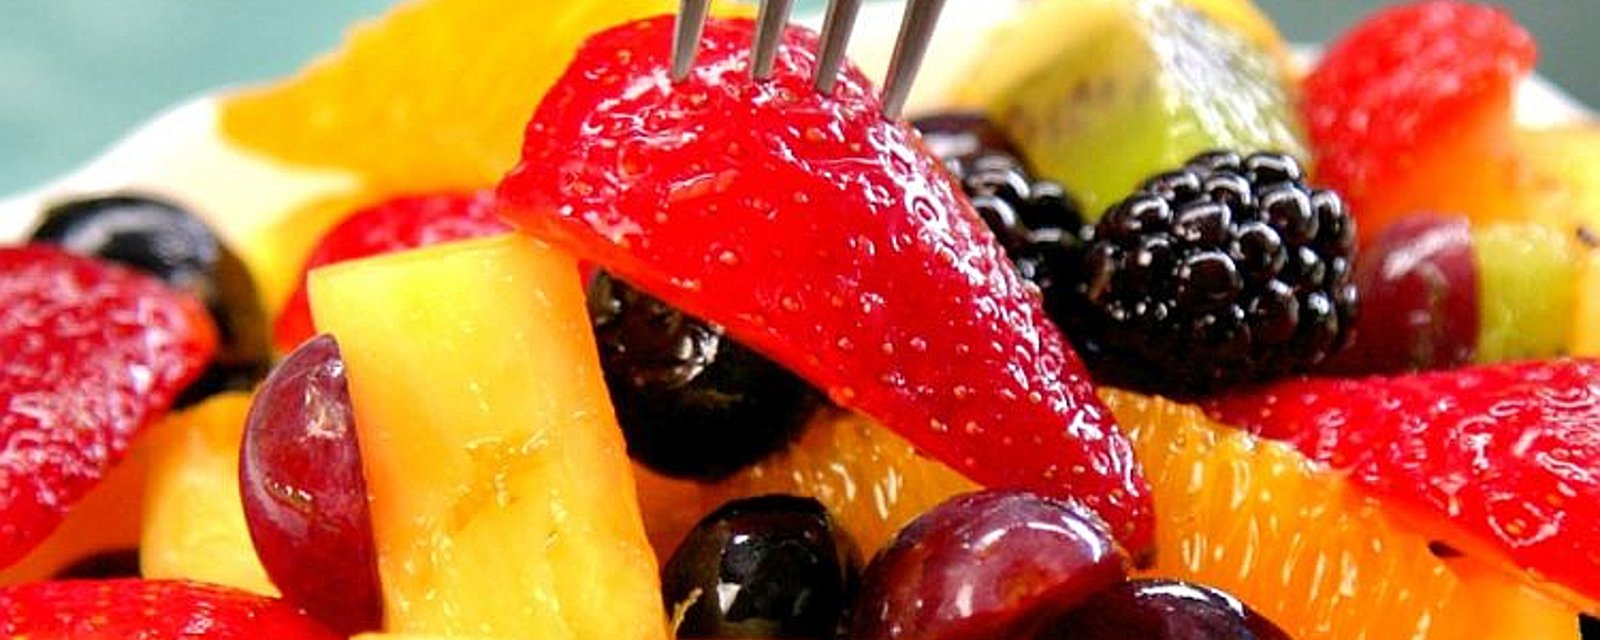 Goûtez à cette salade de fruits colorés avec coulis à la lime et au miel